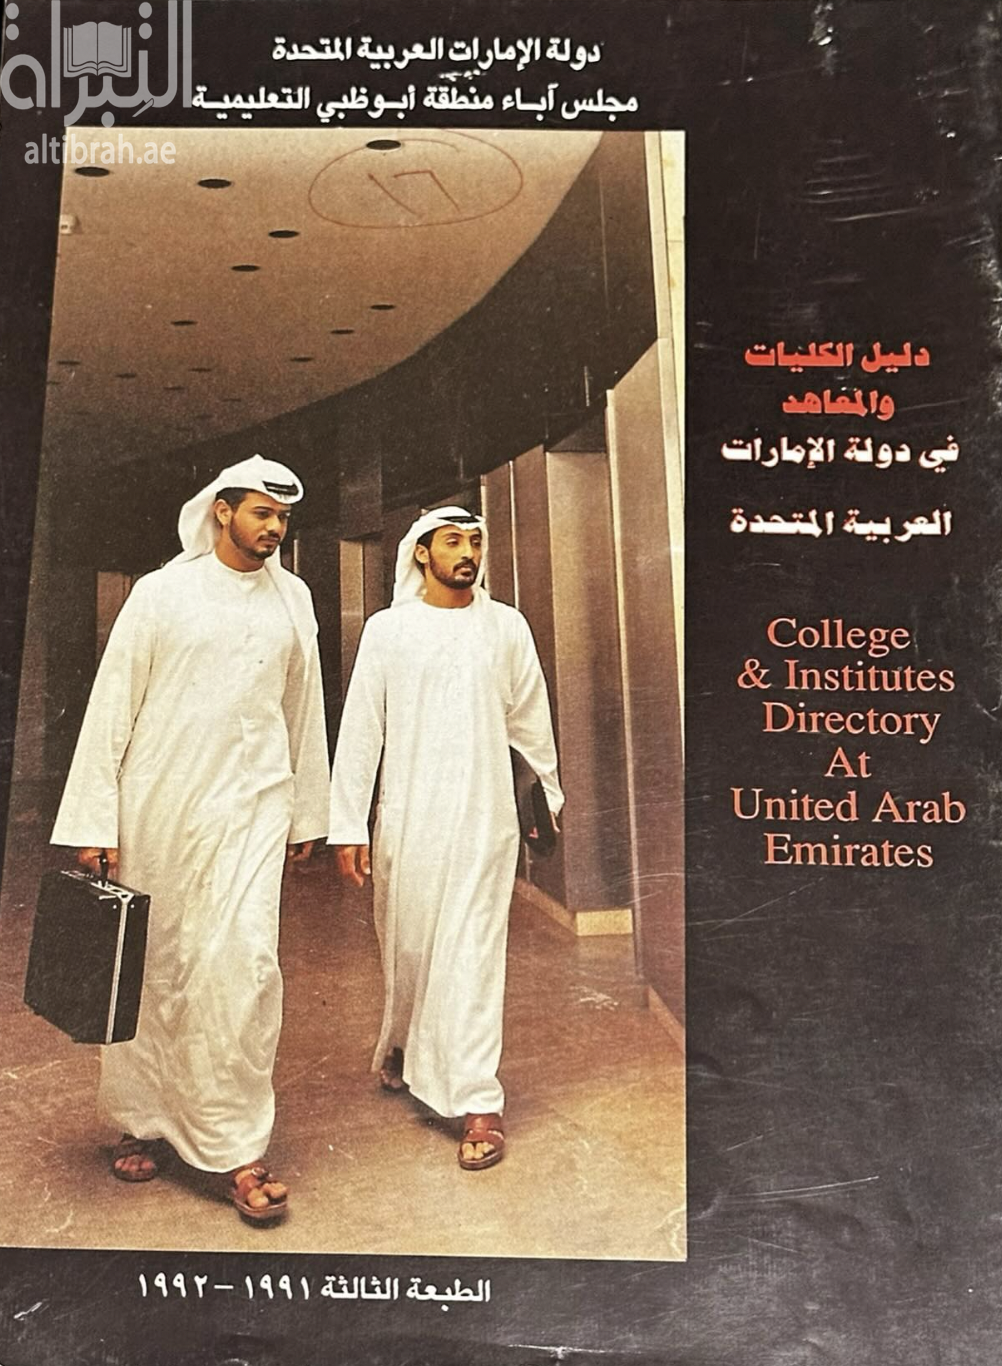 دليل الكليات و المعاهد في دولة الإمارات العربية المتحدة College & Institutes directory at United Arab Emirates